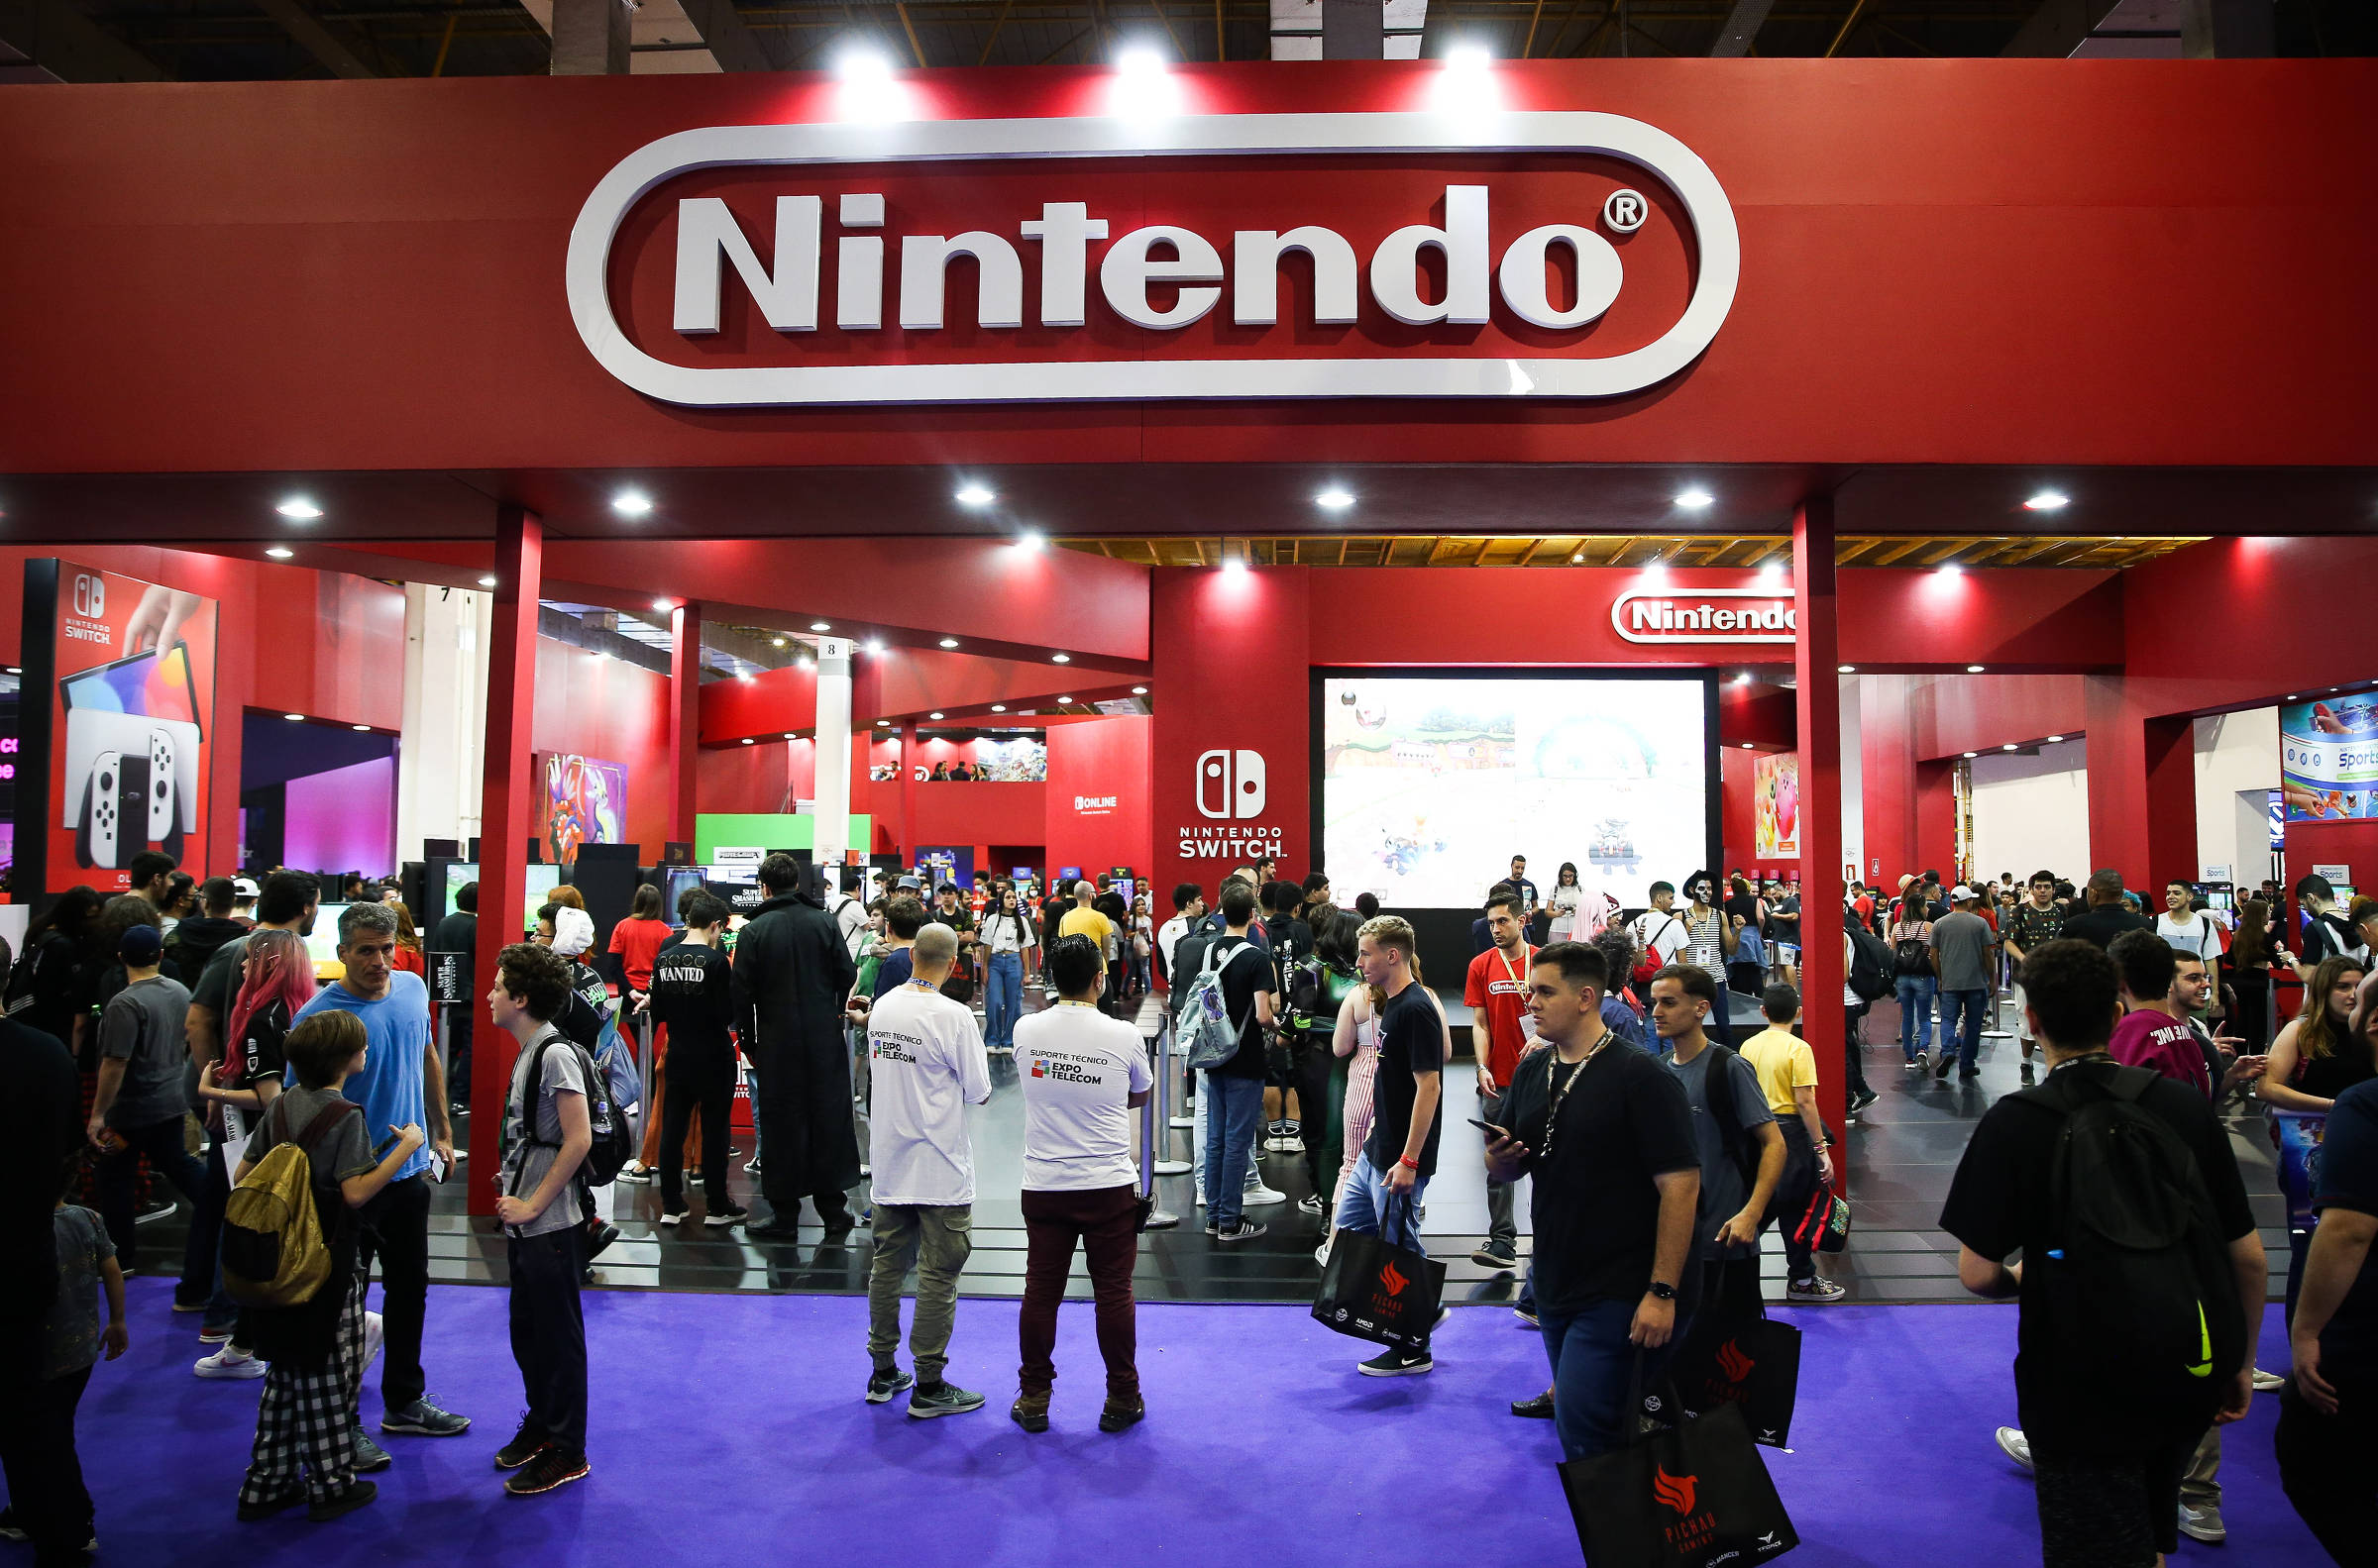 Nintendo no Brasil: quais os planos da empresa agora que voltou ao país? -  NerdBunker